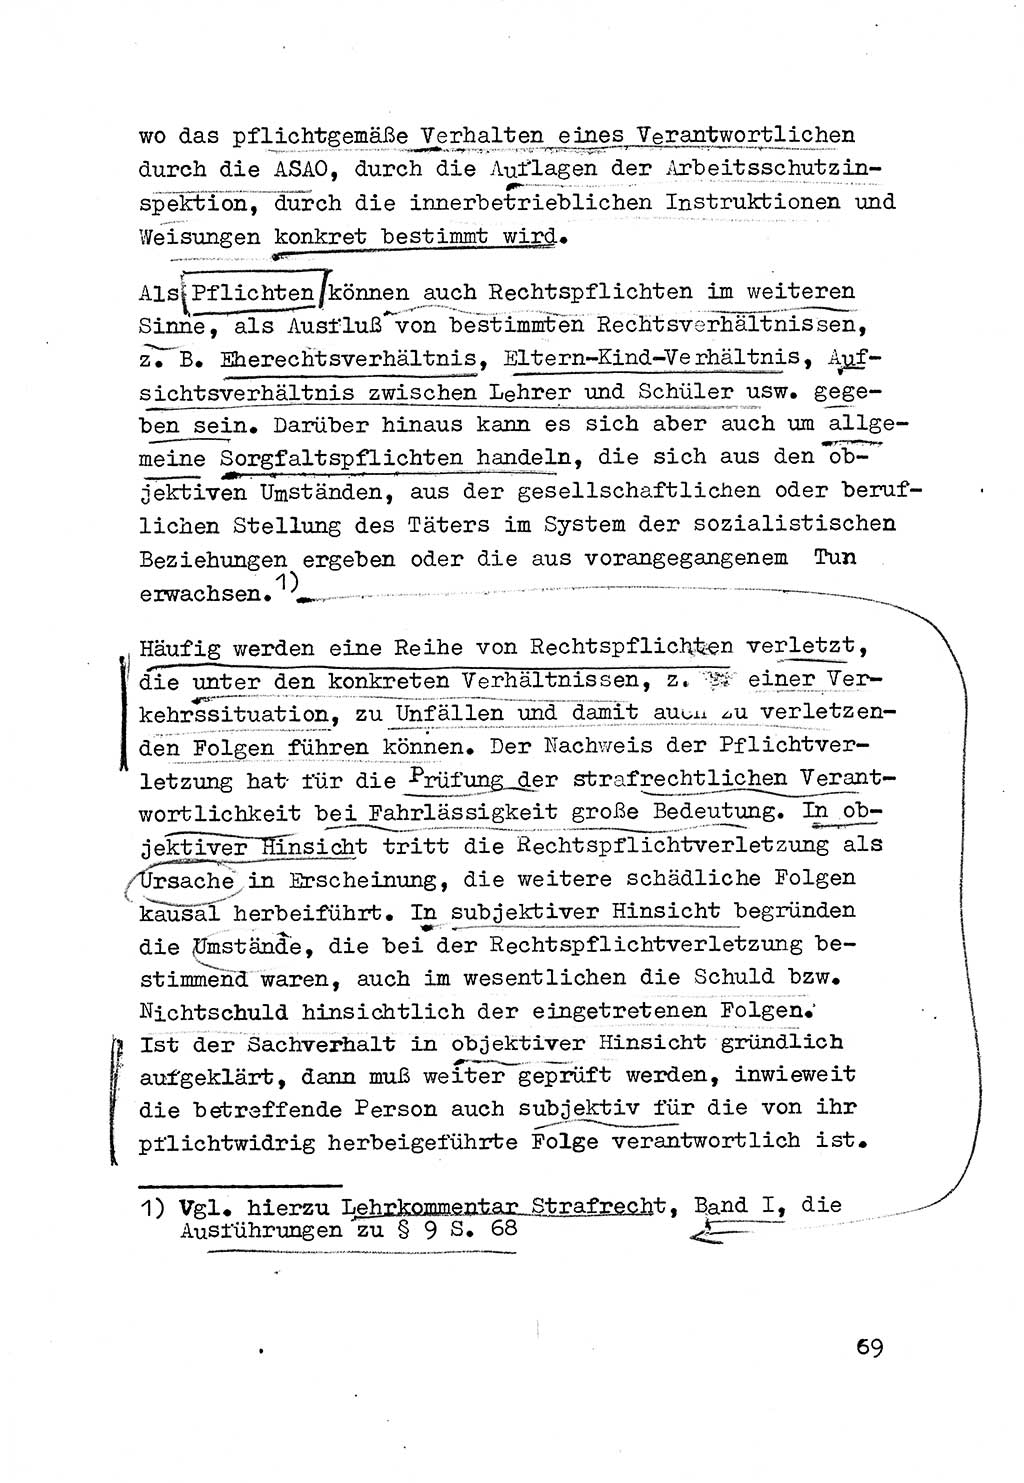 Strafrecht der DDR (Deutsche Demokratische Republik), Besonderer Teil, Lehrmaterial, Heft 3 1969, Seite 69 (Strafr. DDR BT Lehrmat. H. 3 1969, S. 69)